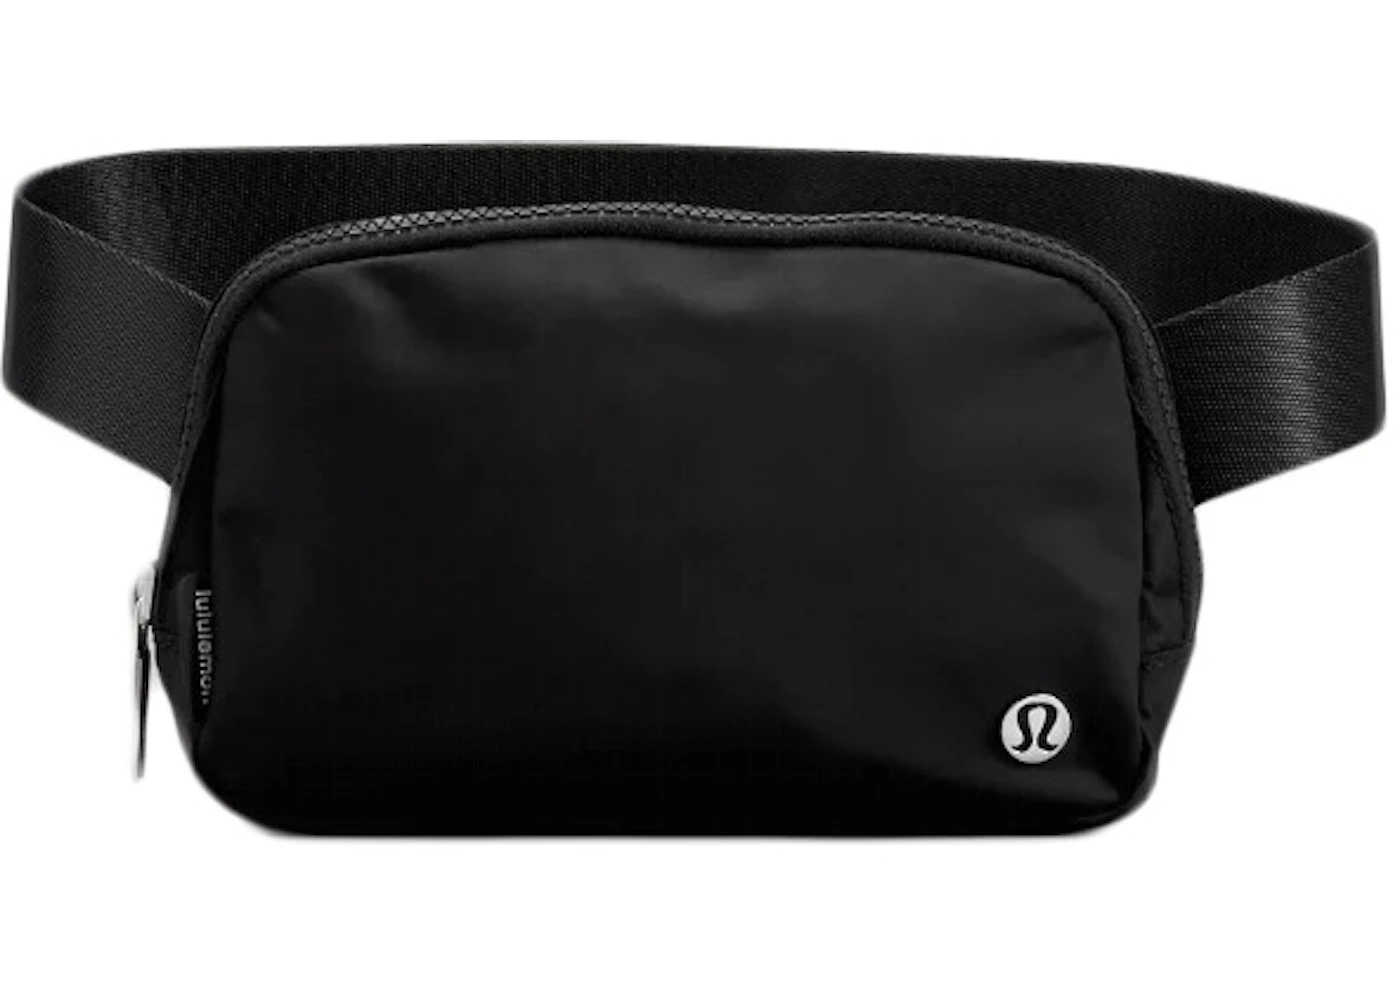 Lululemon Everywhere Belt Bag Crossbody Bag Black in Waterproof Polyester -  US